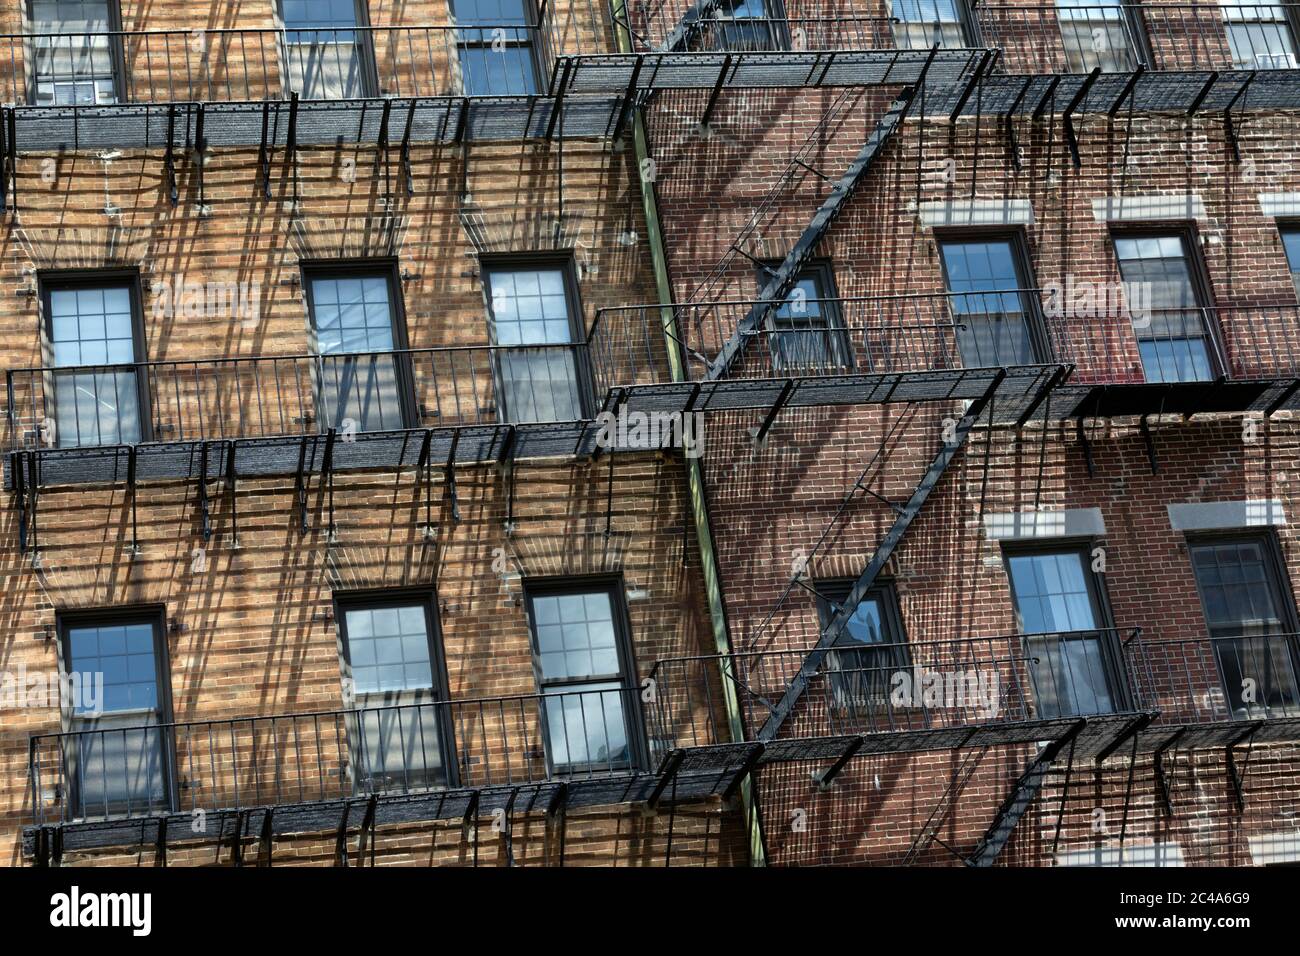 fire escape windows shadows Stock Photo